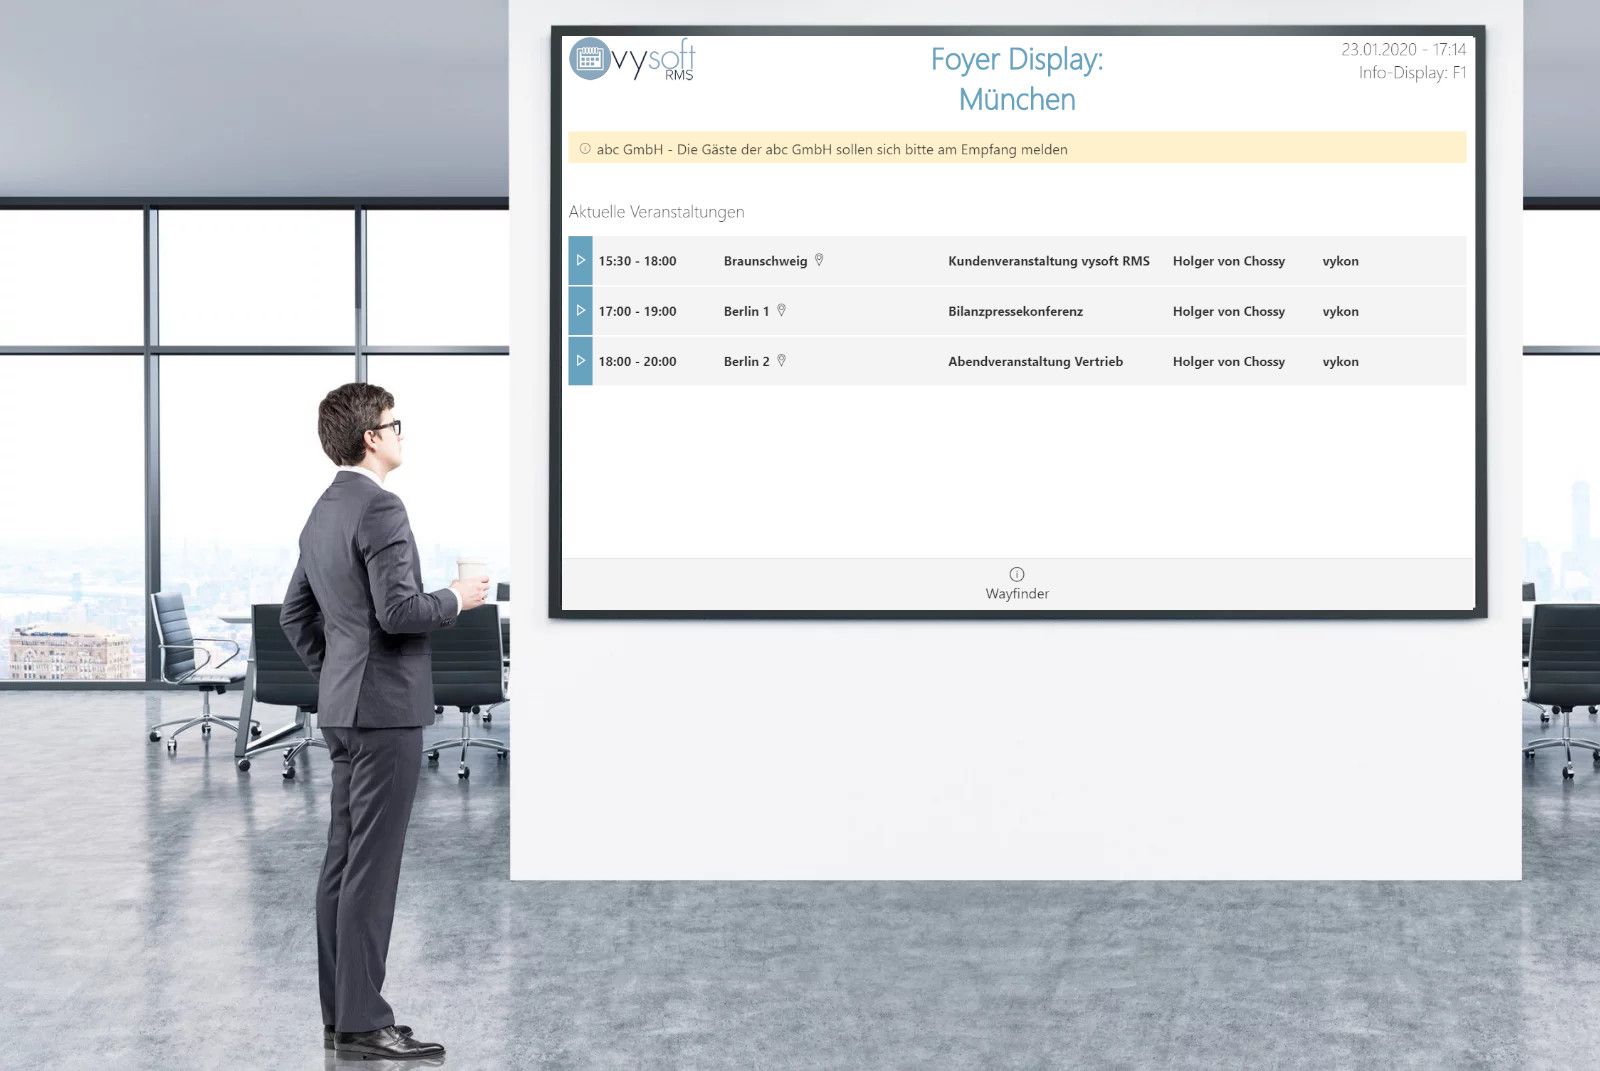 Infoscreen, écran d’accueil de vysoft intégré dans le système de réservation de salles